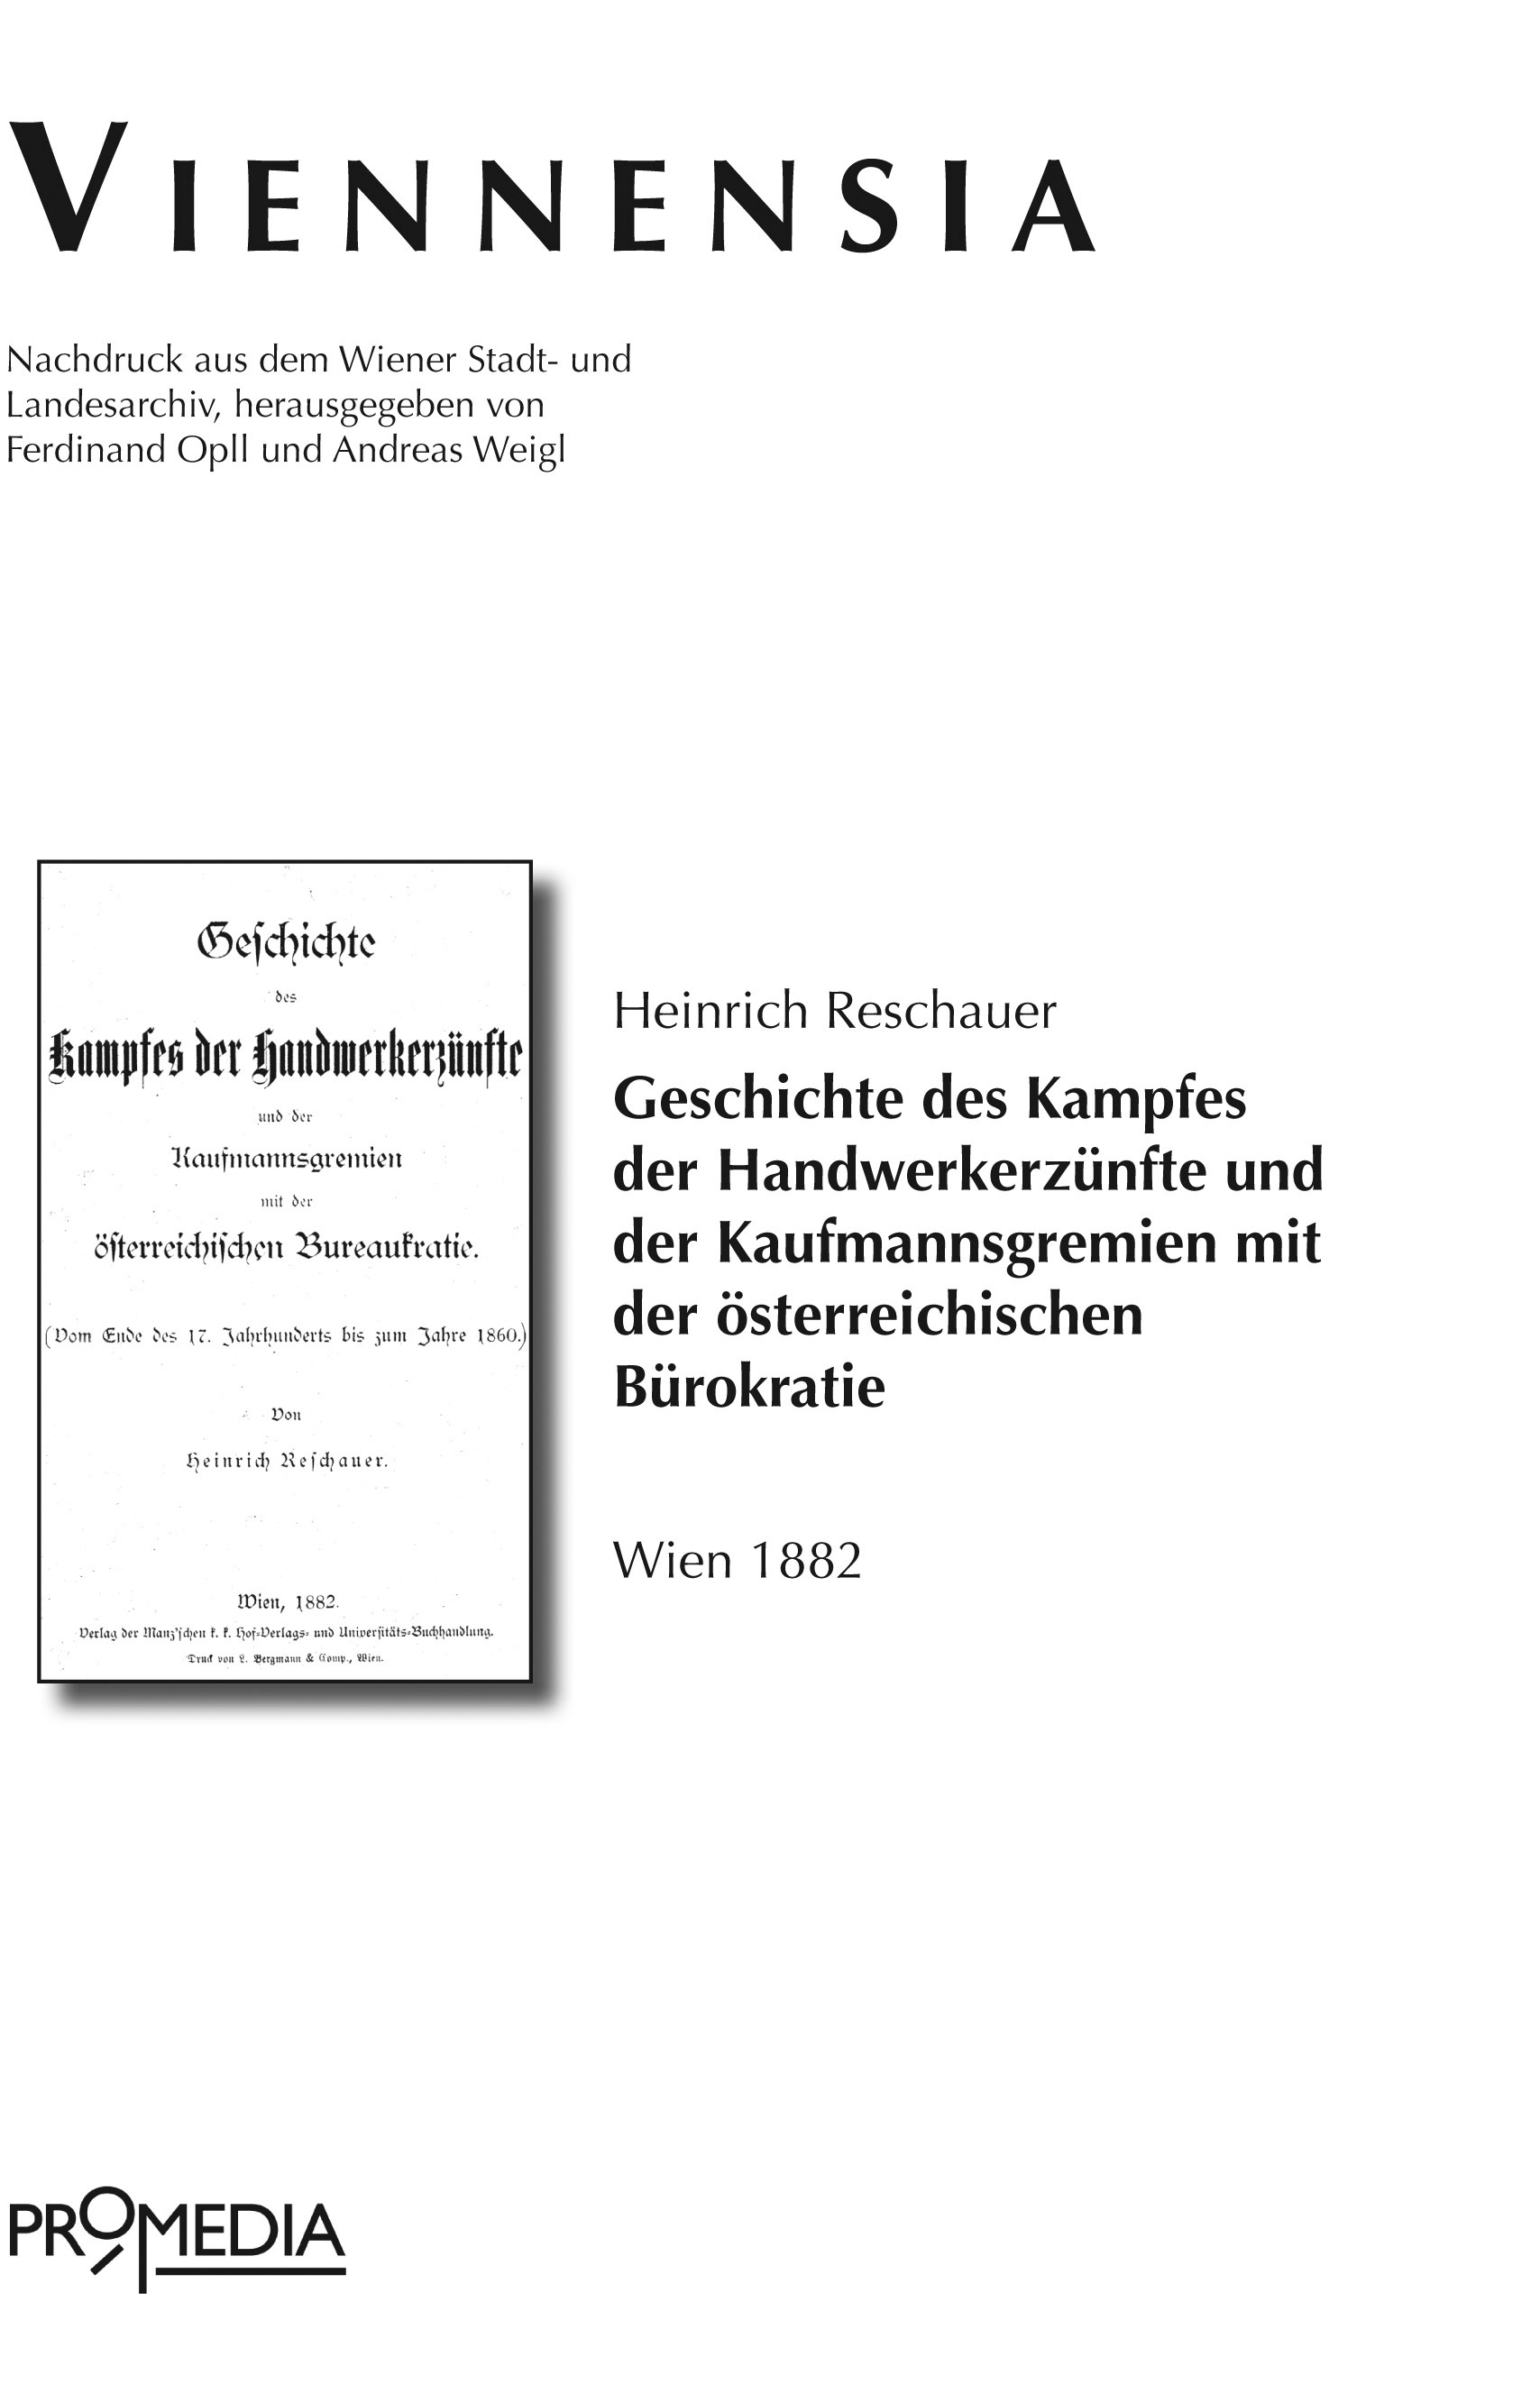 [Cover] Geschichte des Kampfes der Handwerkerzünfte und der Kaufmannsgremien mit der österreichischen Bureaukratie